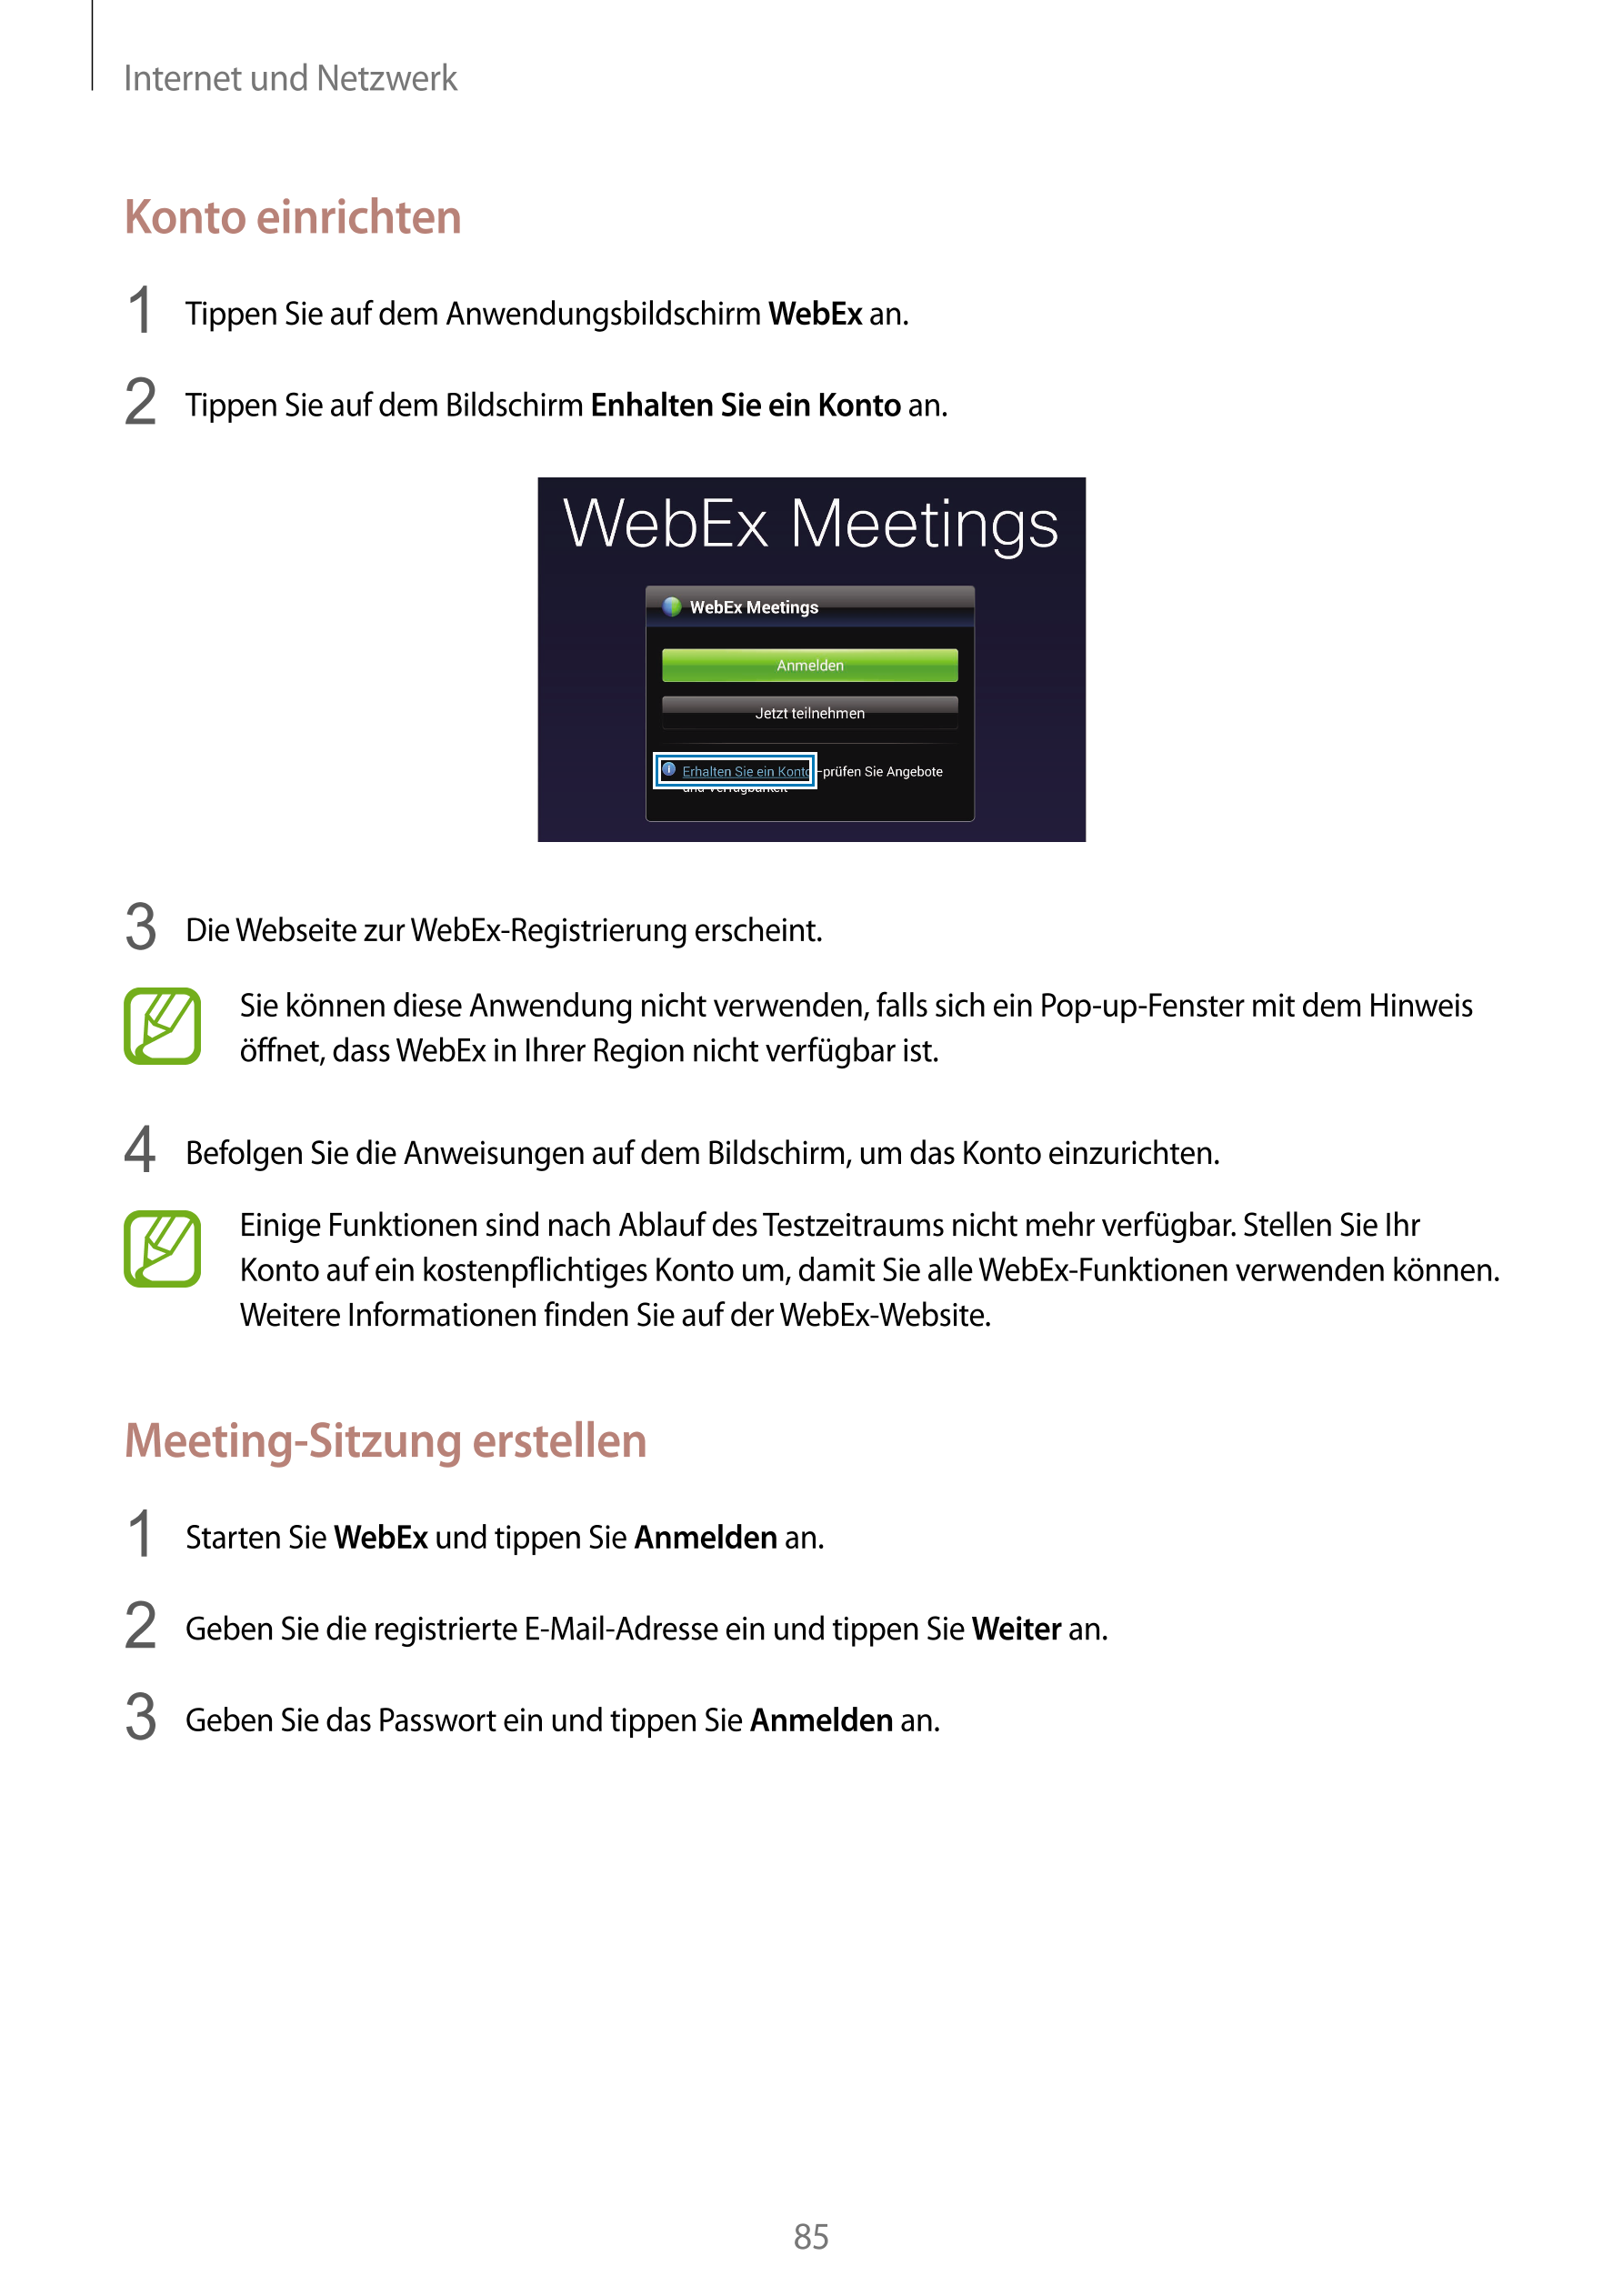 Internet und Netzwerk
Konto einrichten
1  Tippen Sie auf dem Anwendungsbildschirm  WebEx an.
2  Tippen Sie auf dem Bildschirm  E